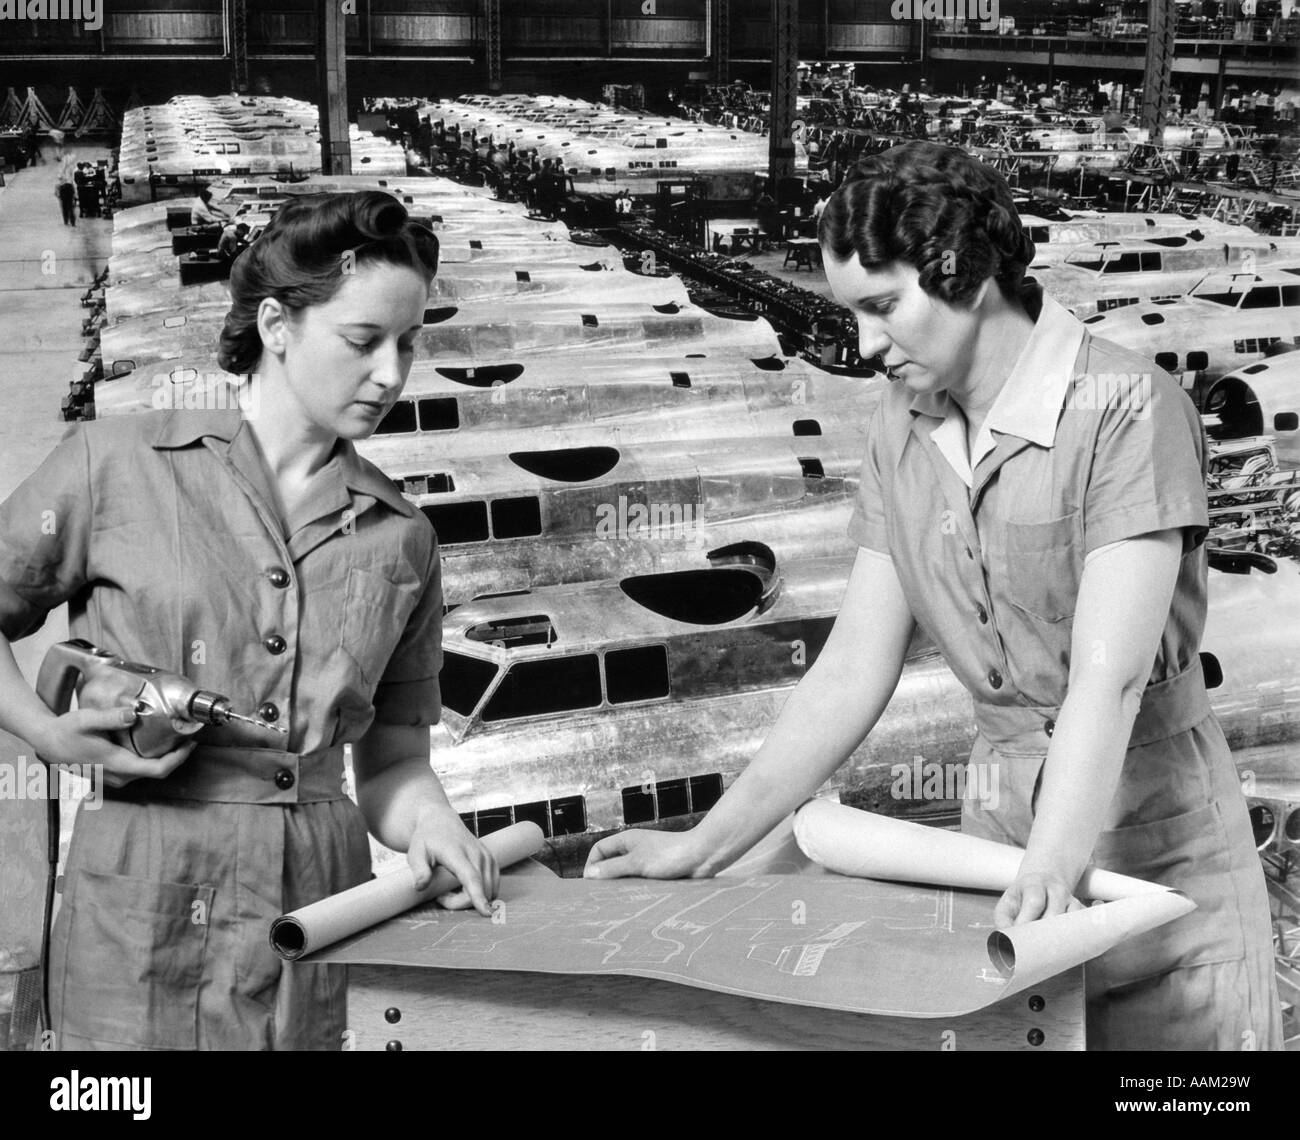 Les travailleuses de l'usine des modèles 1940 à riveter ROSIE FEMME TRAVAILLEUR DE GUERRE WW2 WWII WORLD WAR 2 avions AVION Banque D'Images